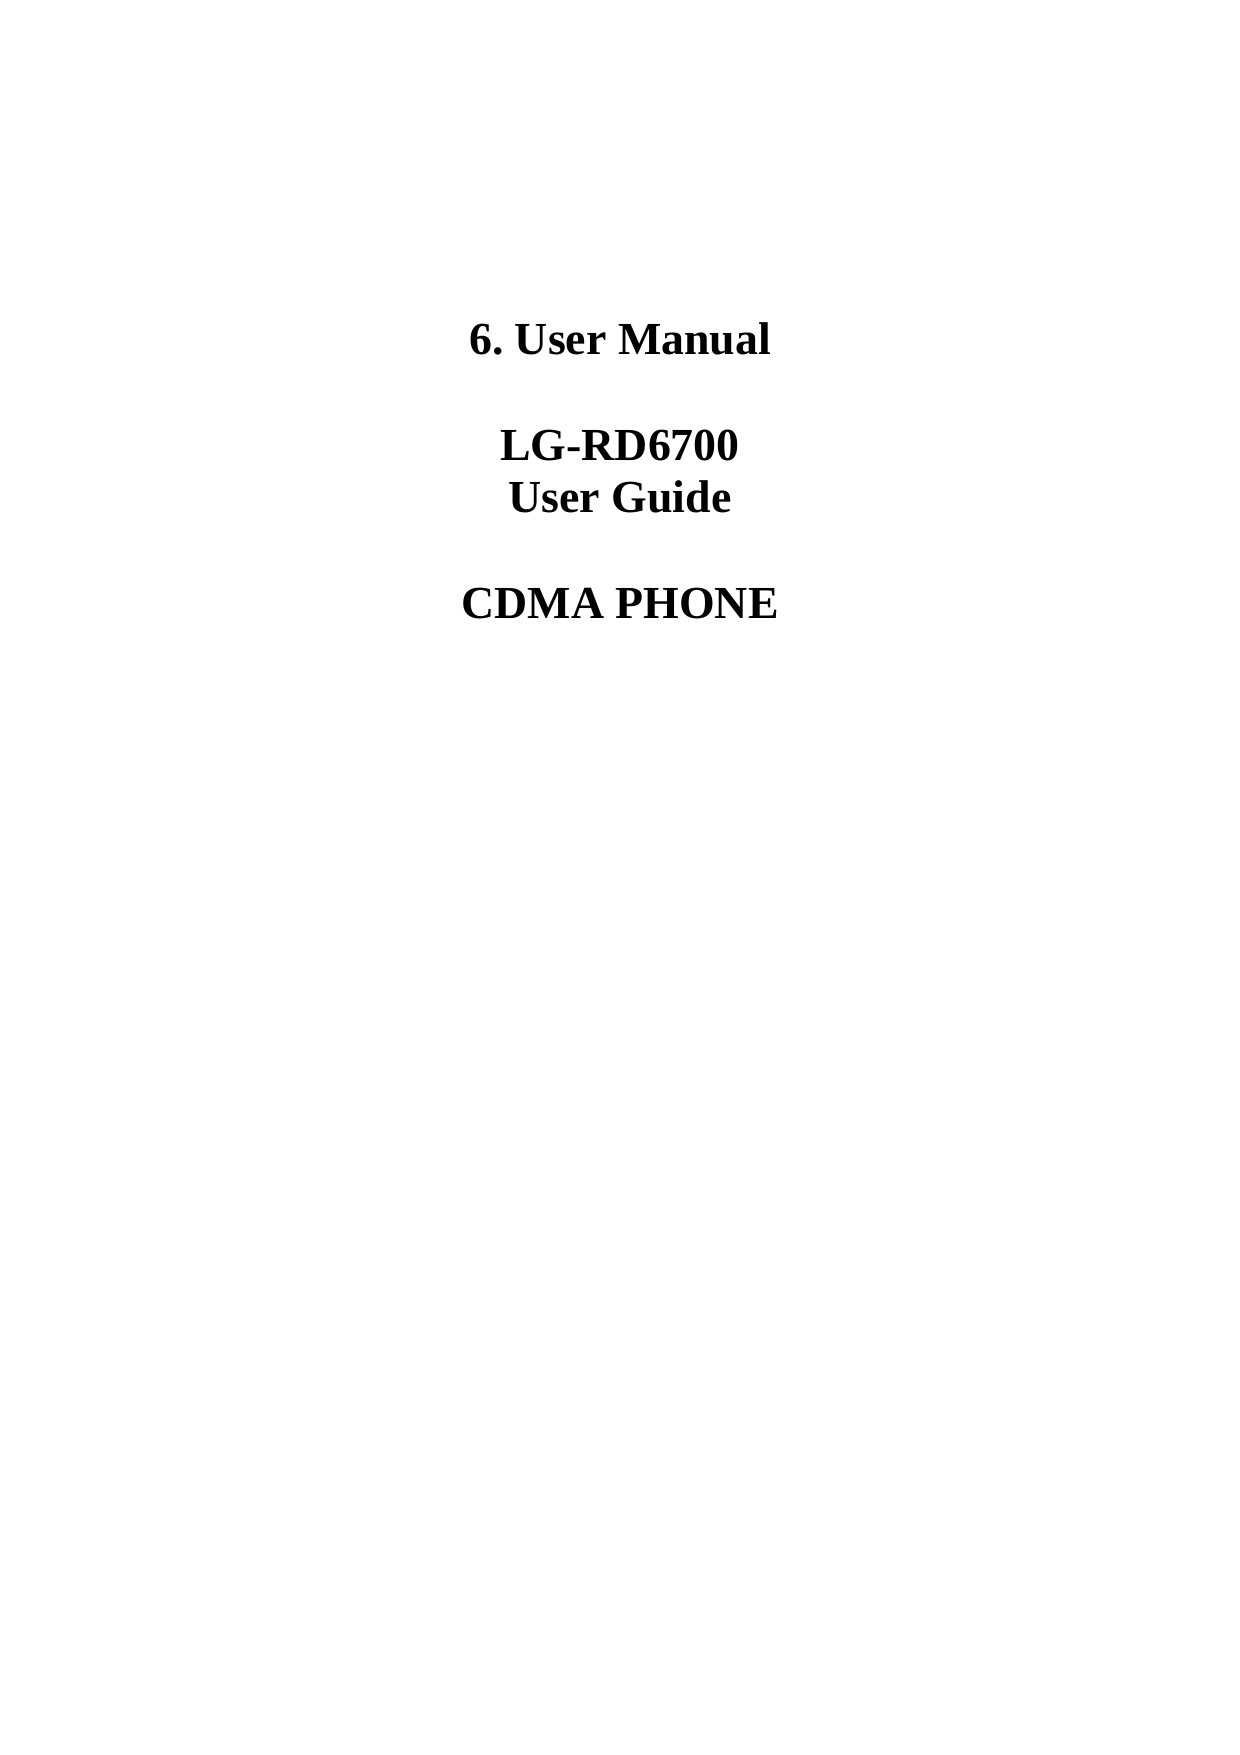   6. User Manual  LG-RD6700 User Guide  CDMA PHONE                          